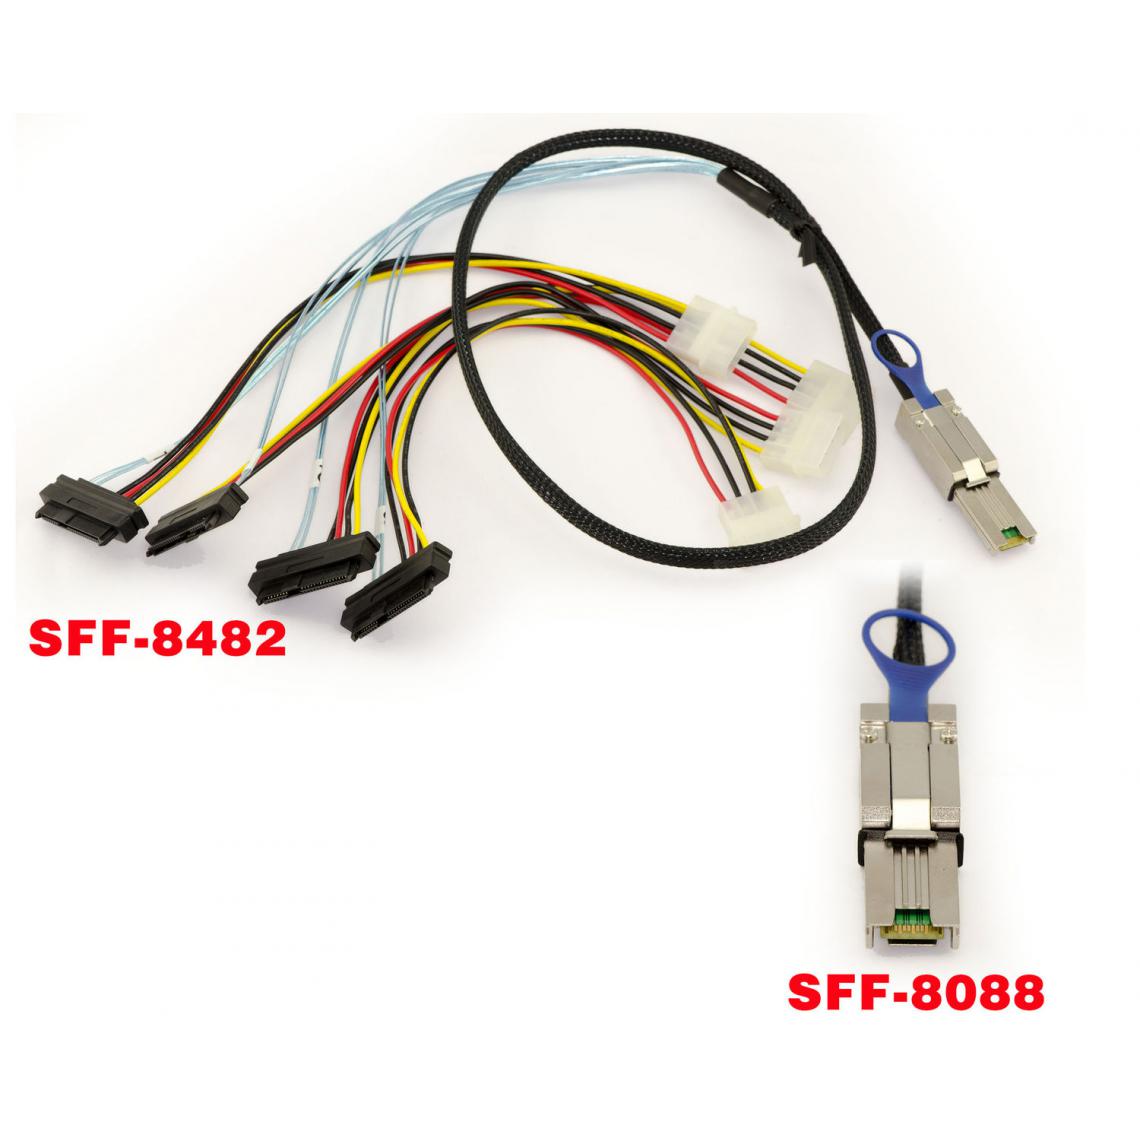 Kalea-Informatique - Cordon SAS MiniSAS SFF-8088 vers SFF-8482 Longueur 100cm - Accessoires SSD